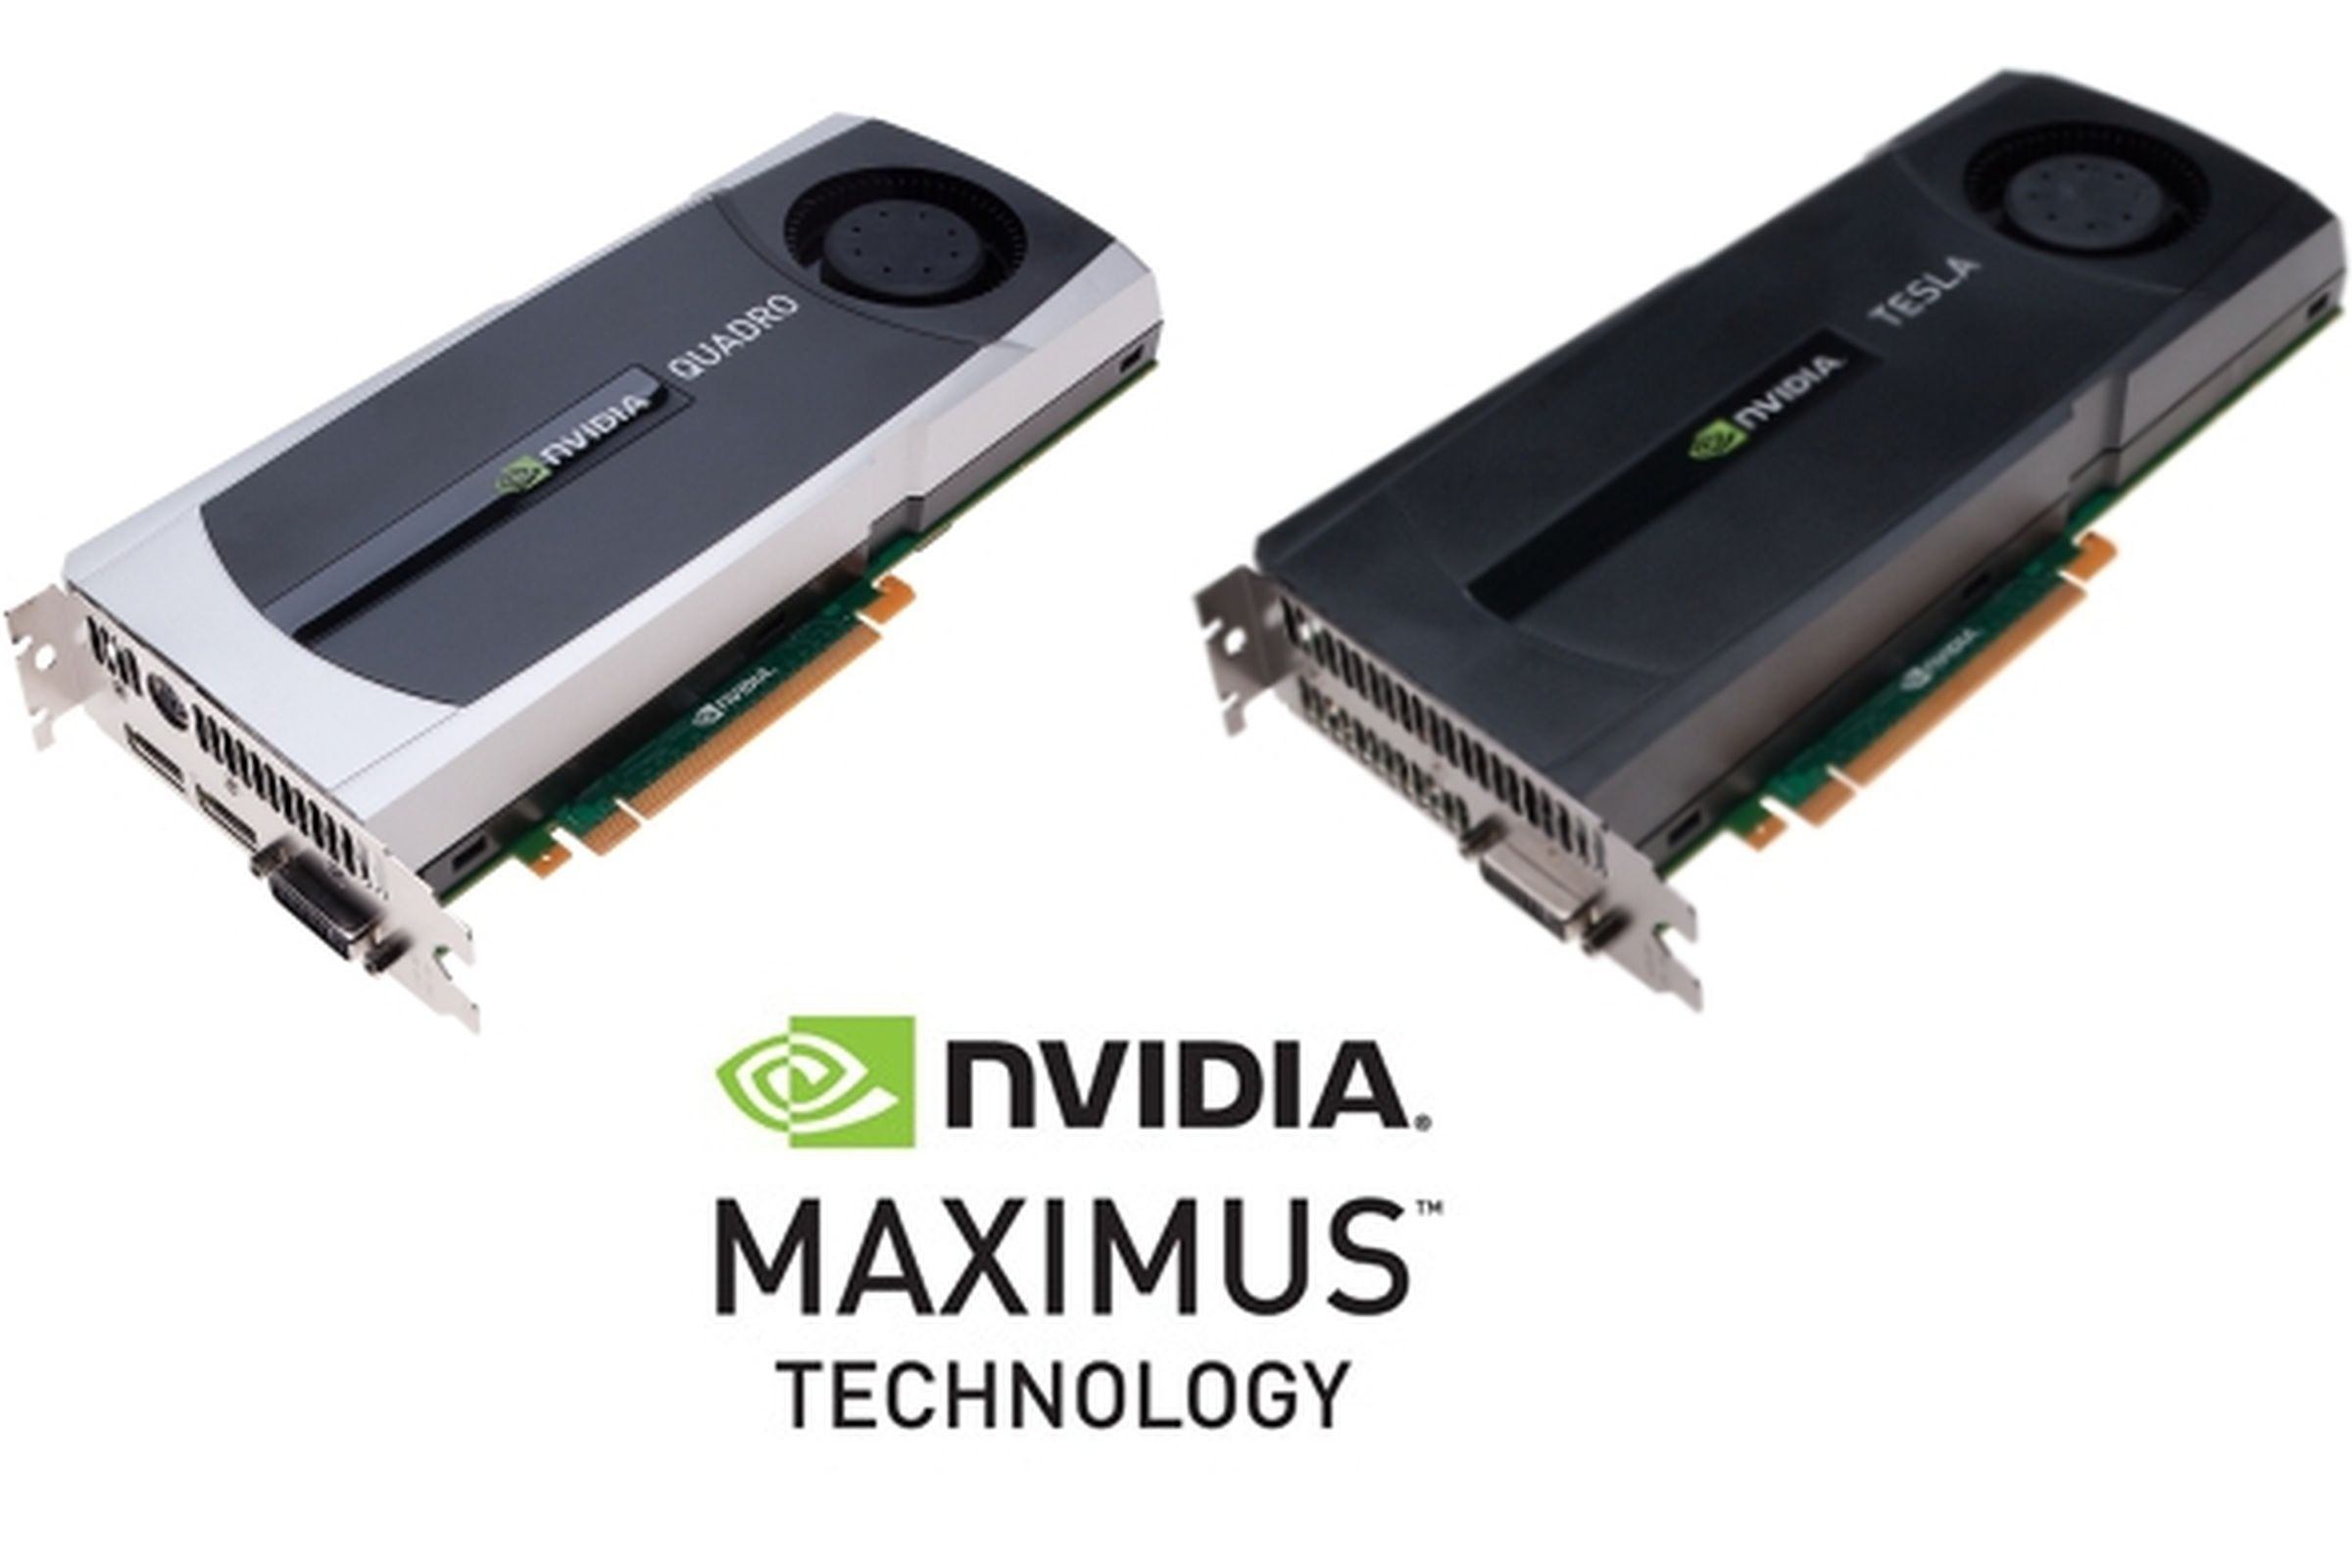 Nvidia Maximus Technology